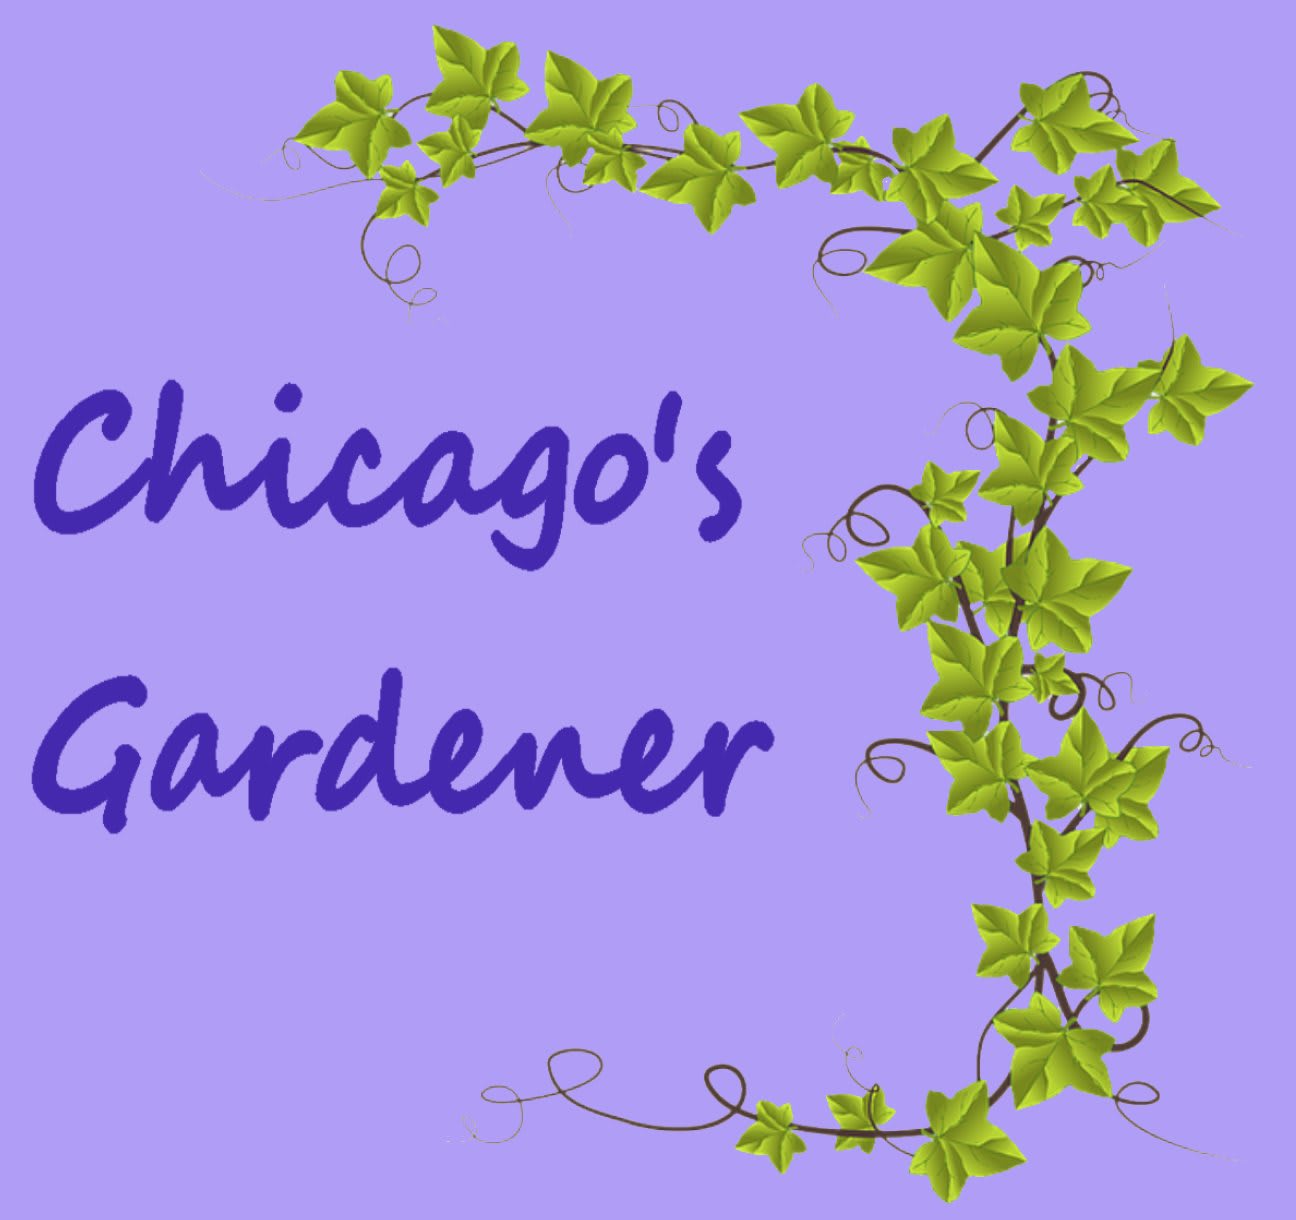 Chicago's Gardener